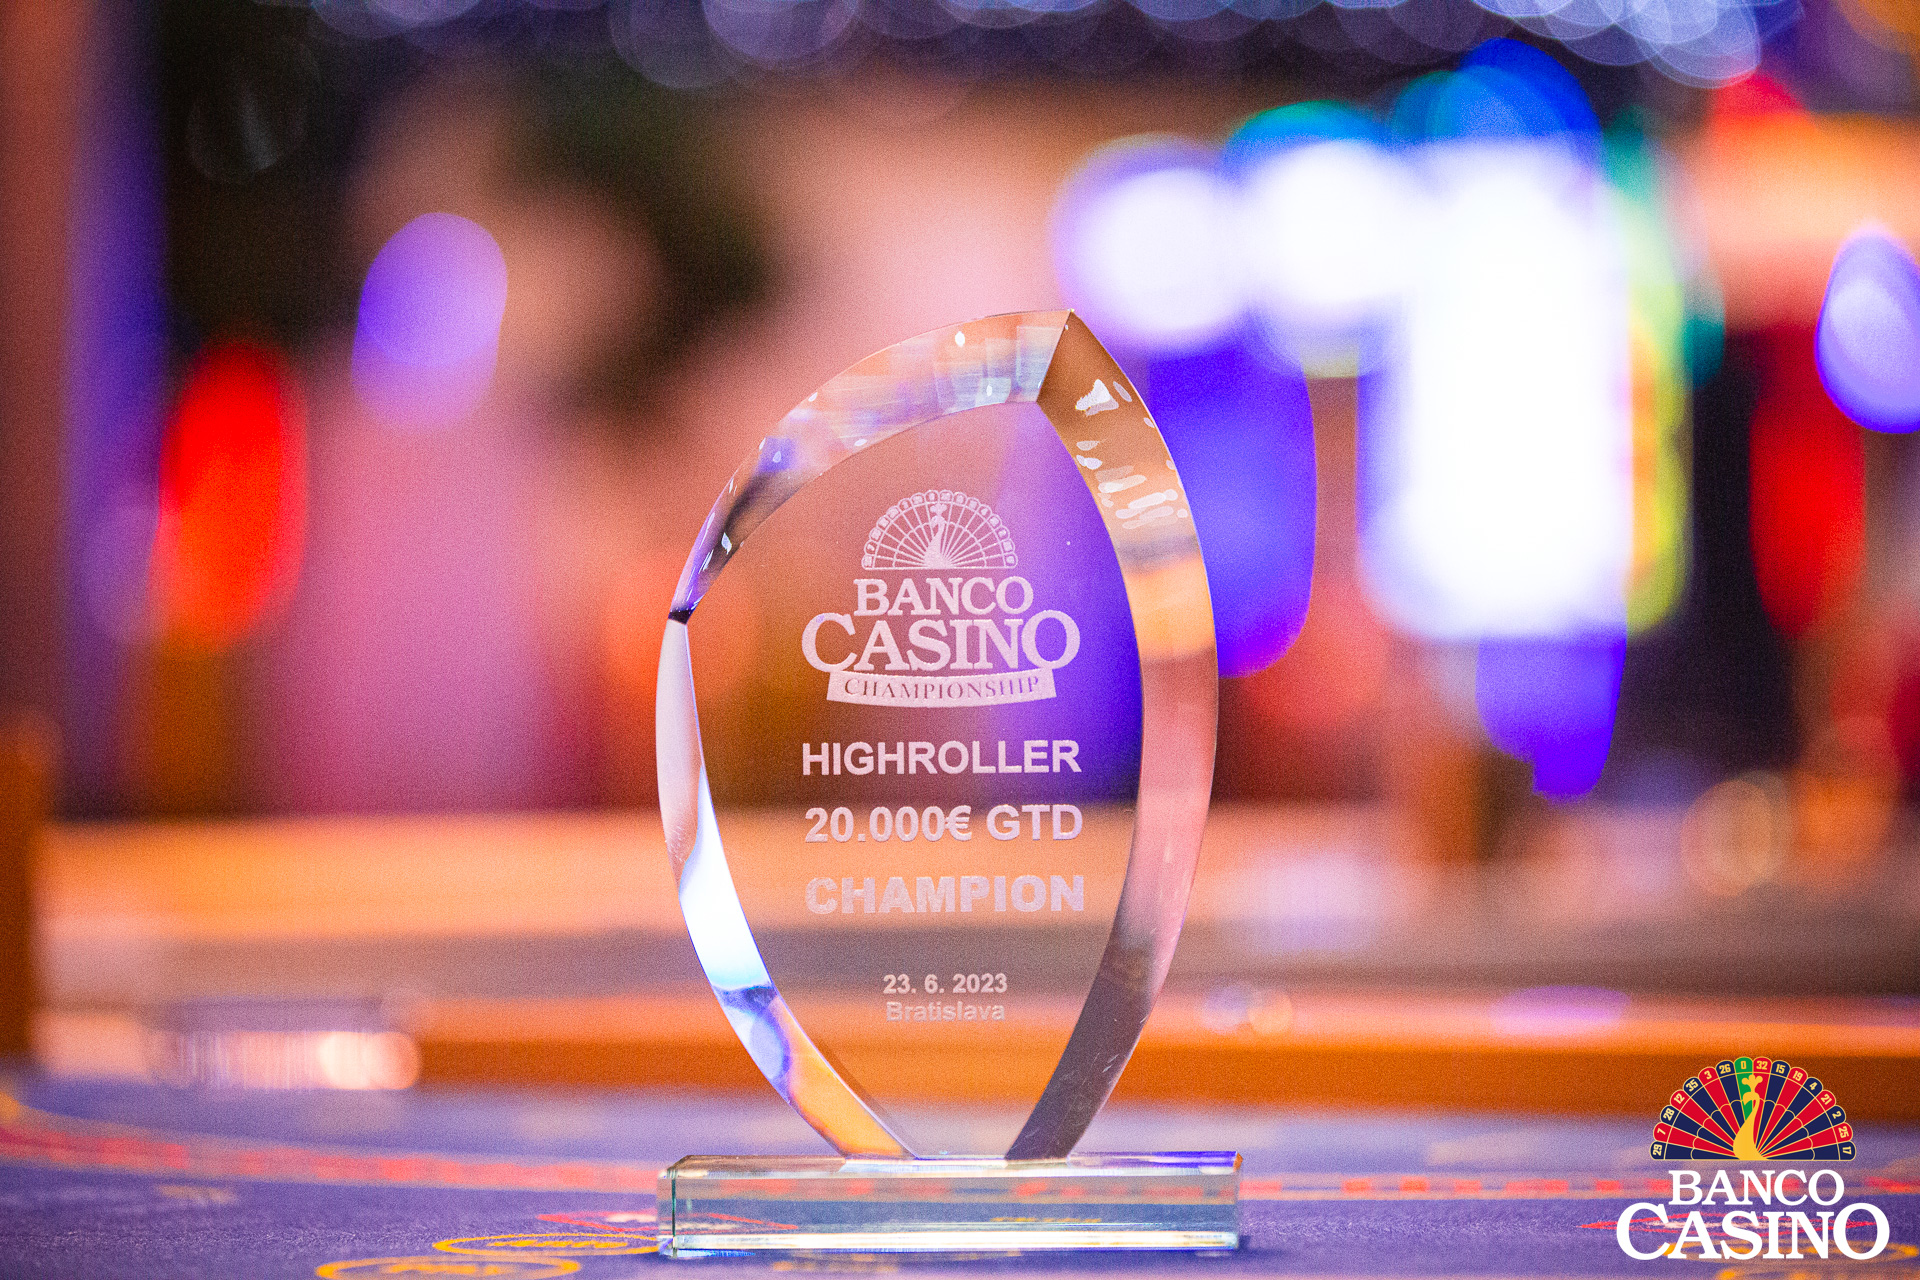 Banco Casino Championship 150.000€ GTD: Po troch úvodných dňoch iba 29 hráčov vo finálovom dni!